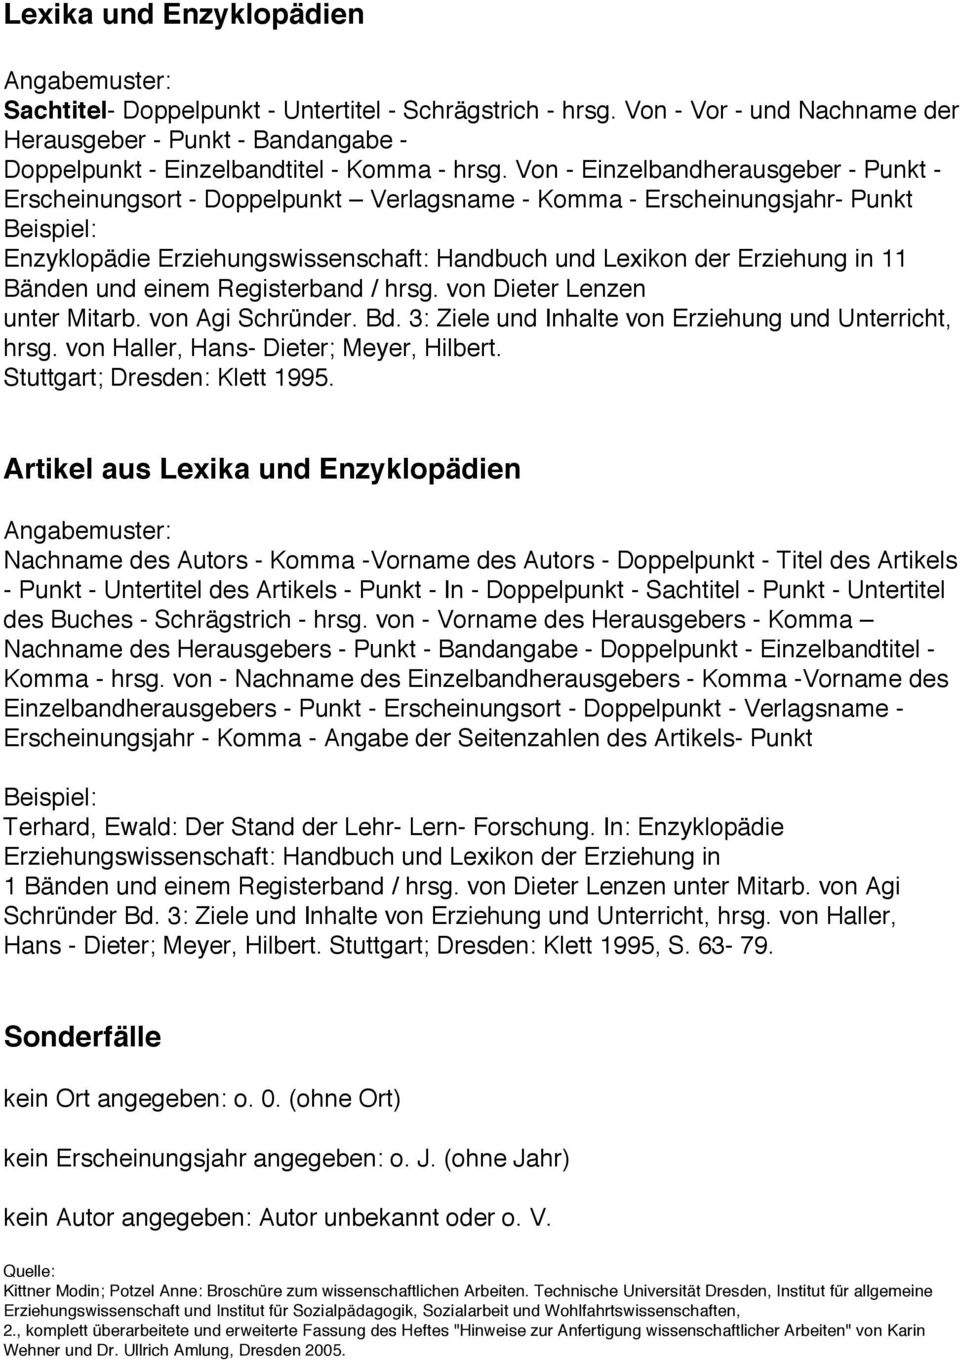 und einem Registerband / hrsg. von Dieter Lenzen unter Mitarb. von Agi Schründer. Bd. 3: Ziele und Inhalte von Erziehung und Unterricht, hrsg. von Haller, Hans- Dieter; Meyer, Hilbert.